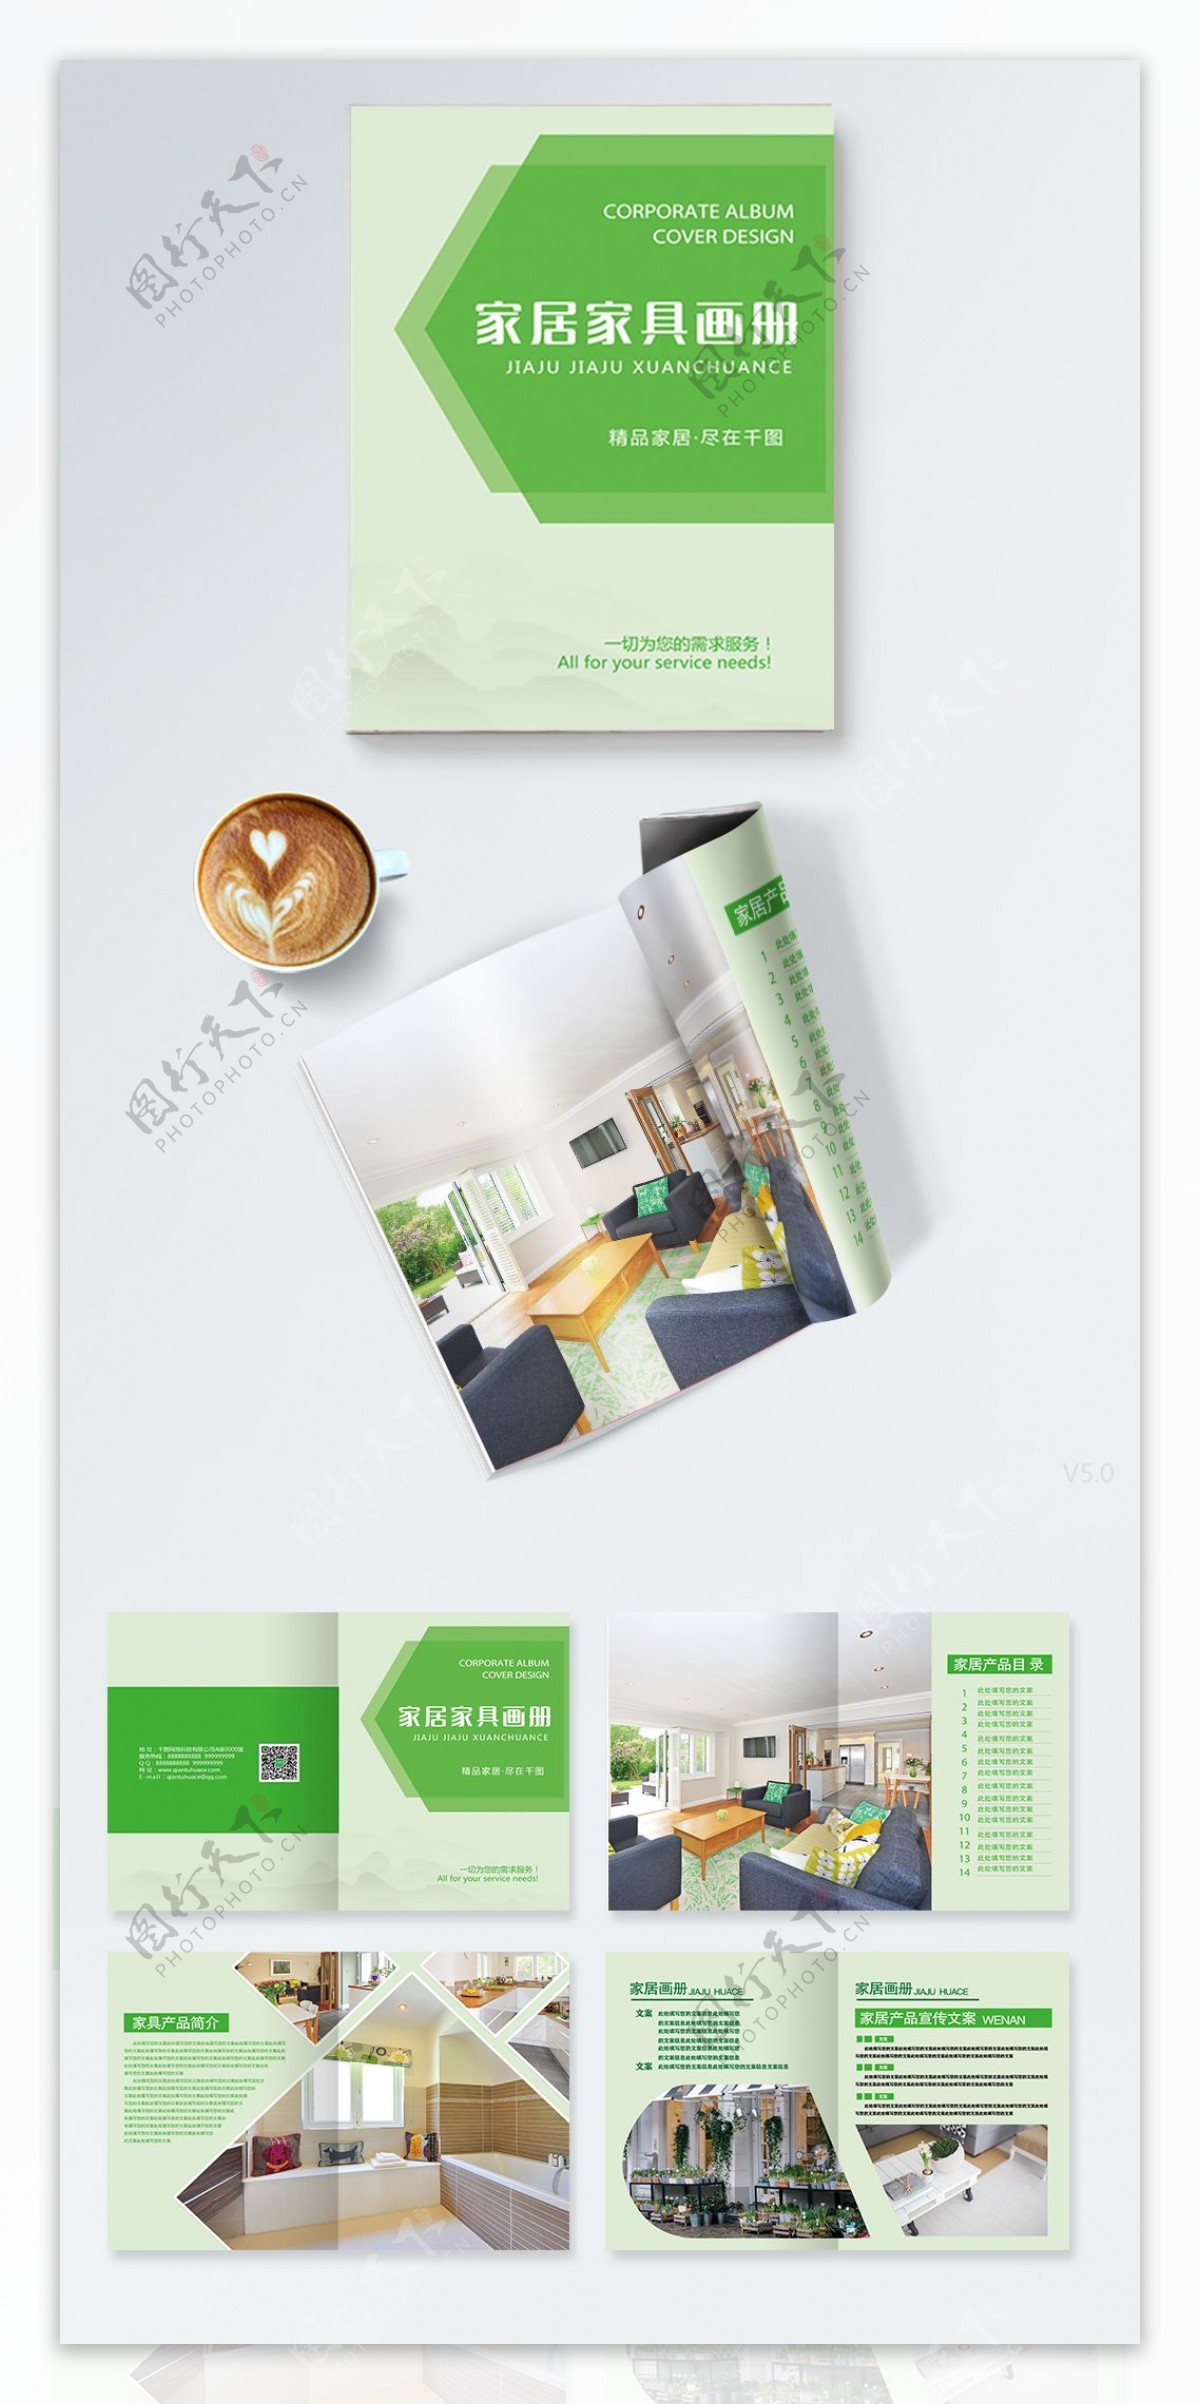 绿色家居家具产品画册PSD模板